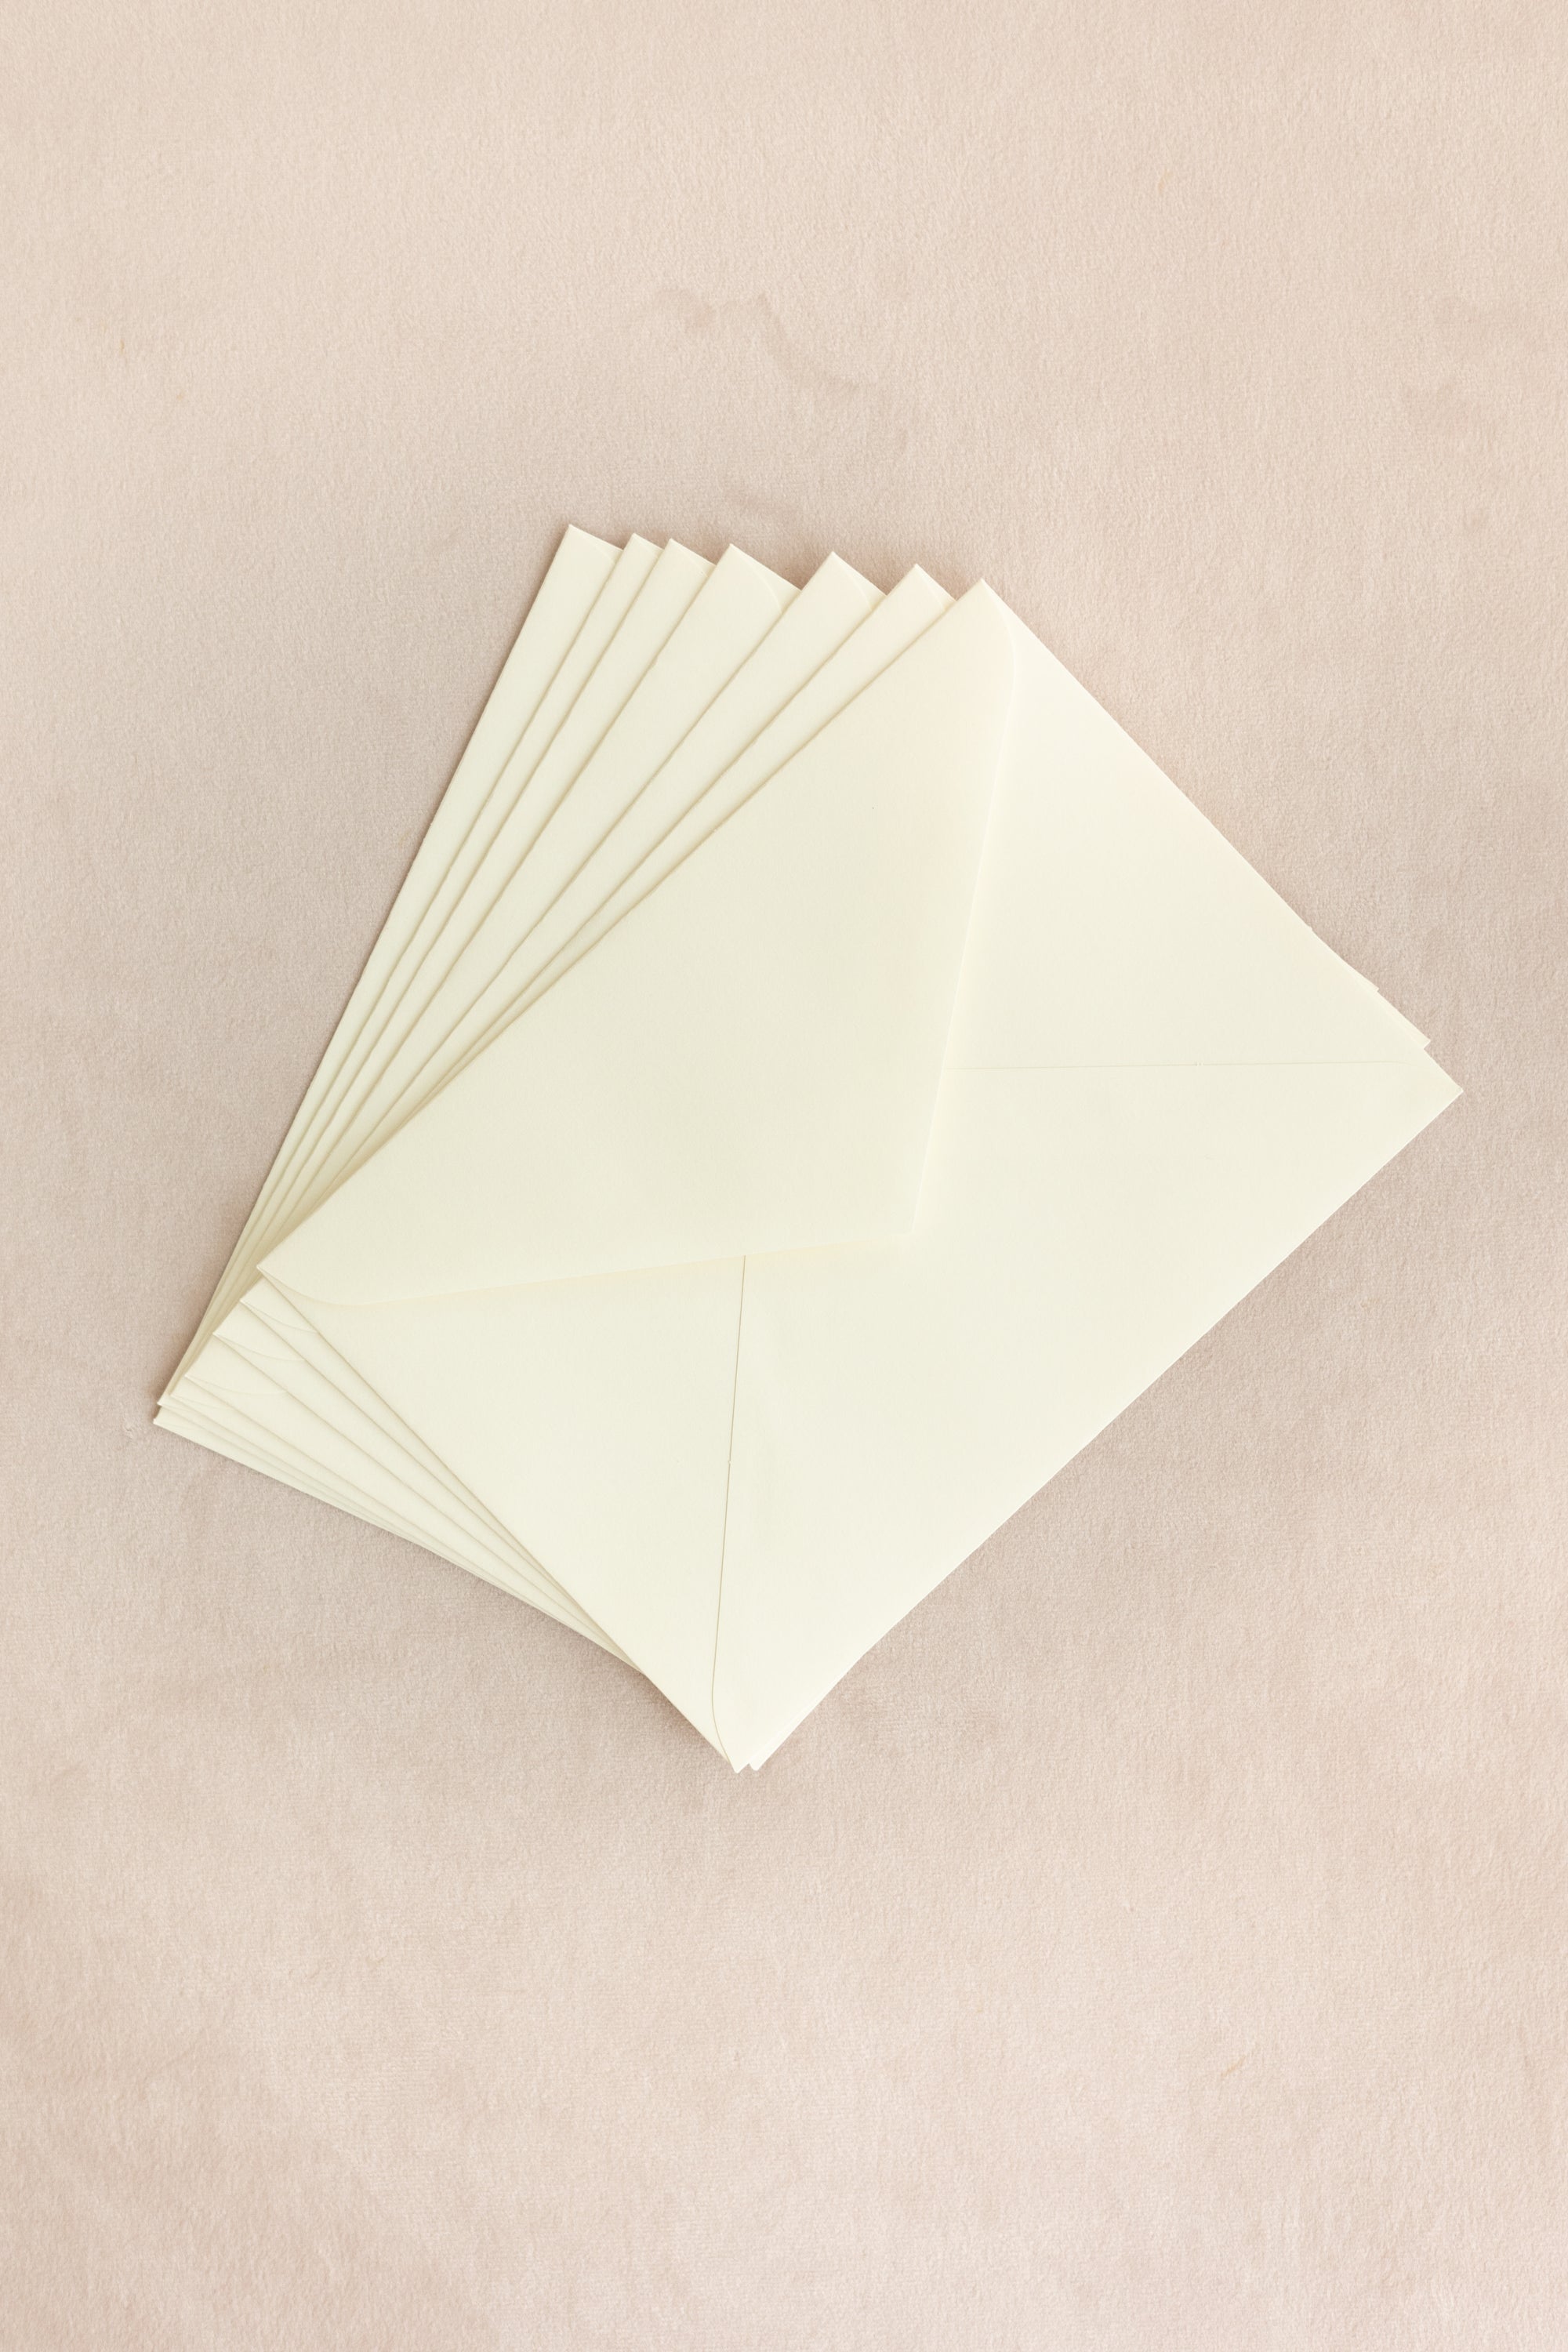 Silk Velvet Greeting Card【Oval】